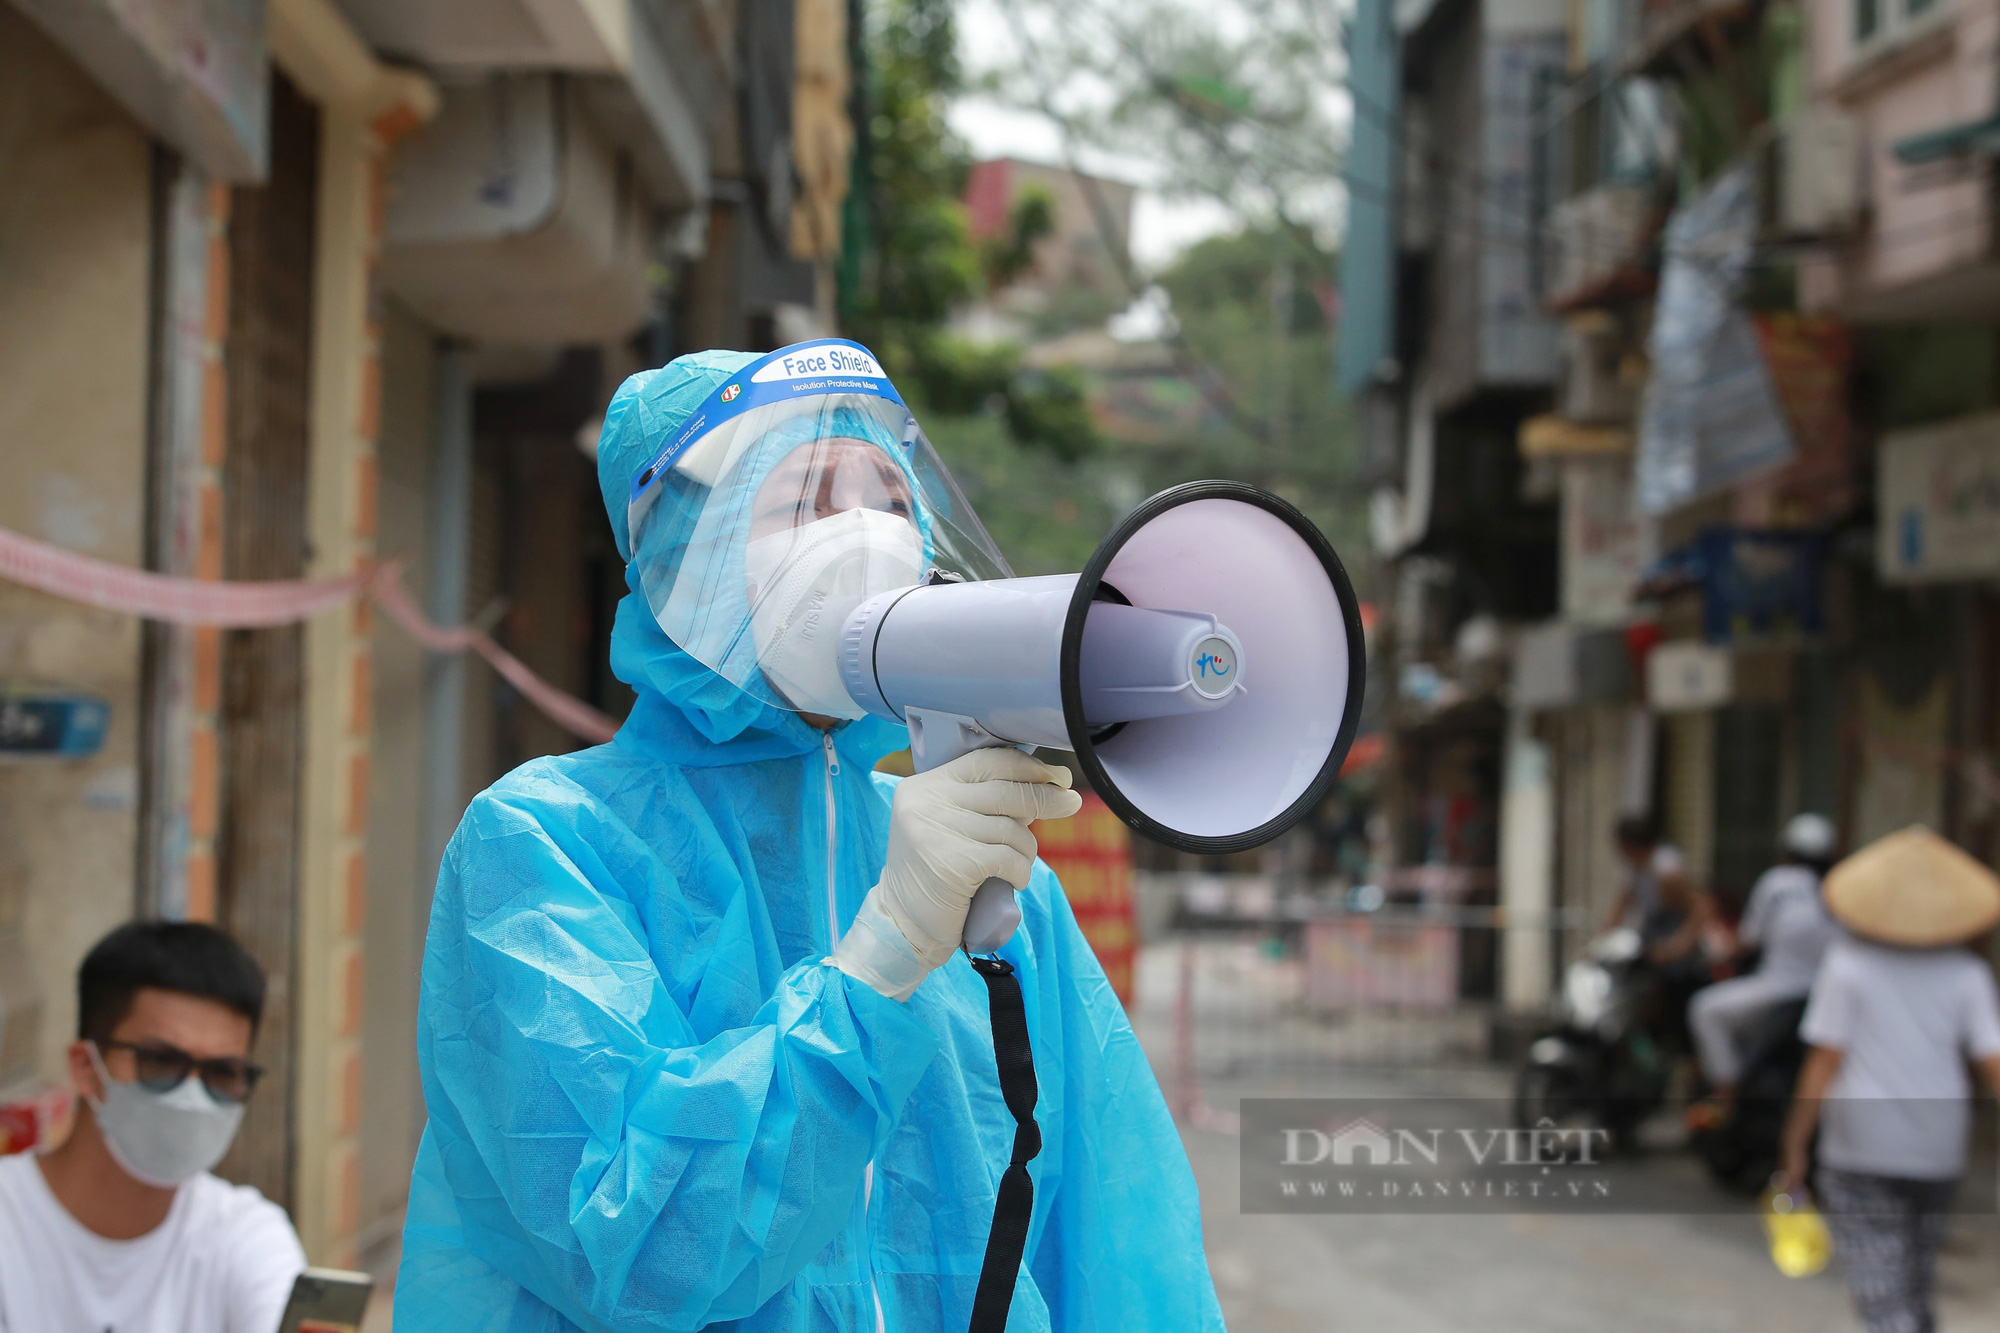 Nhân viên lò mổ Minh Hiền dương tính SARS-CoV-2, Hà Nội thông báo khẩn tìm người từng đến - Ảnh 1.